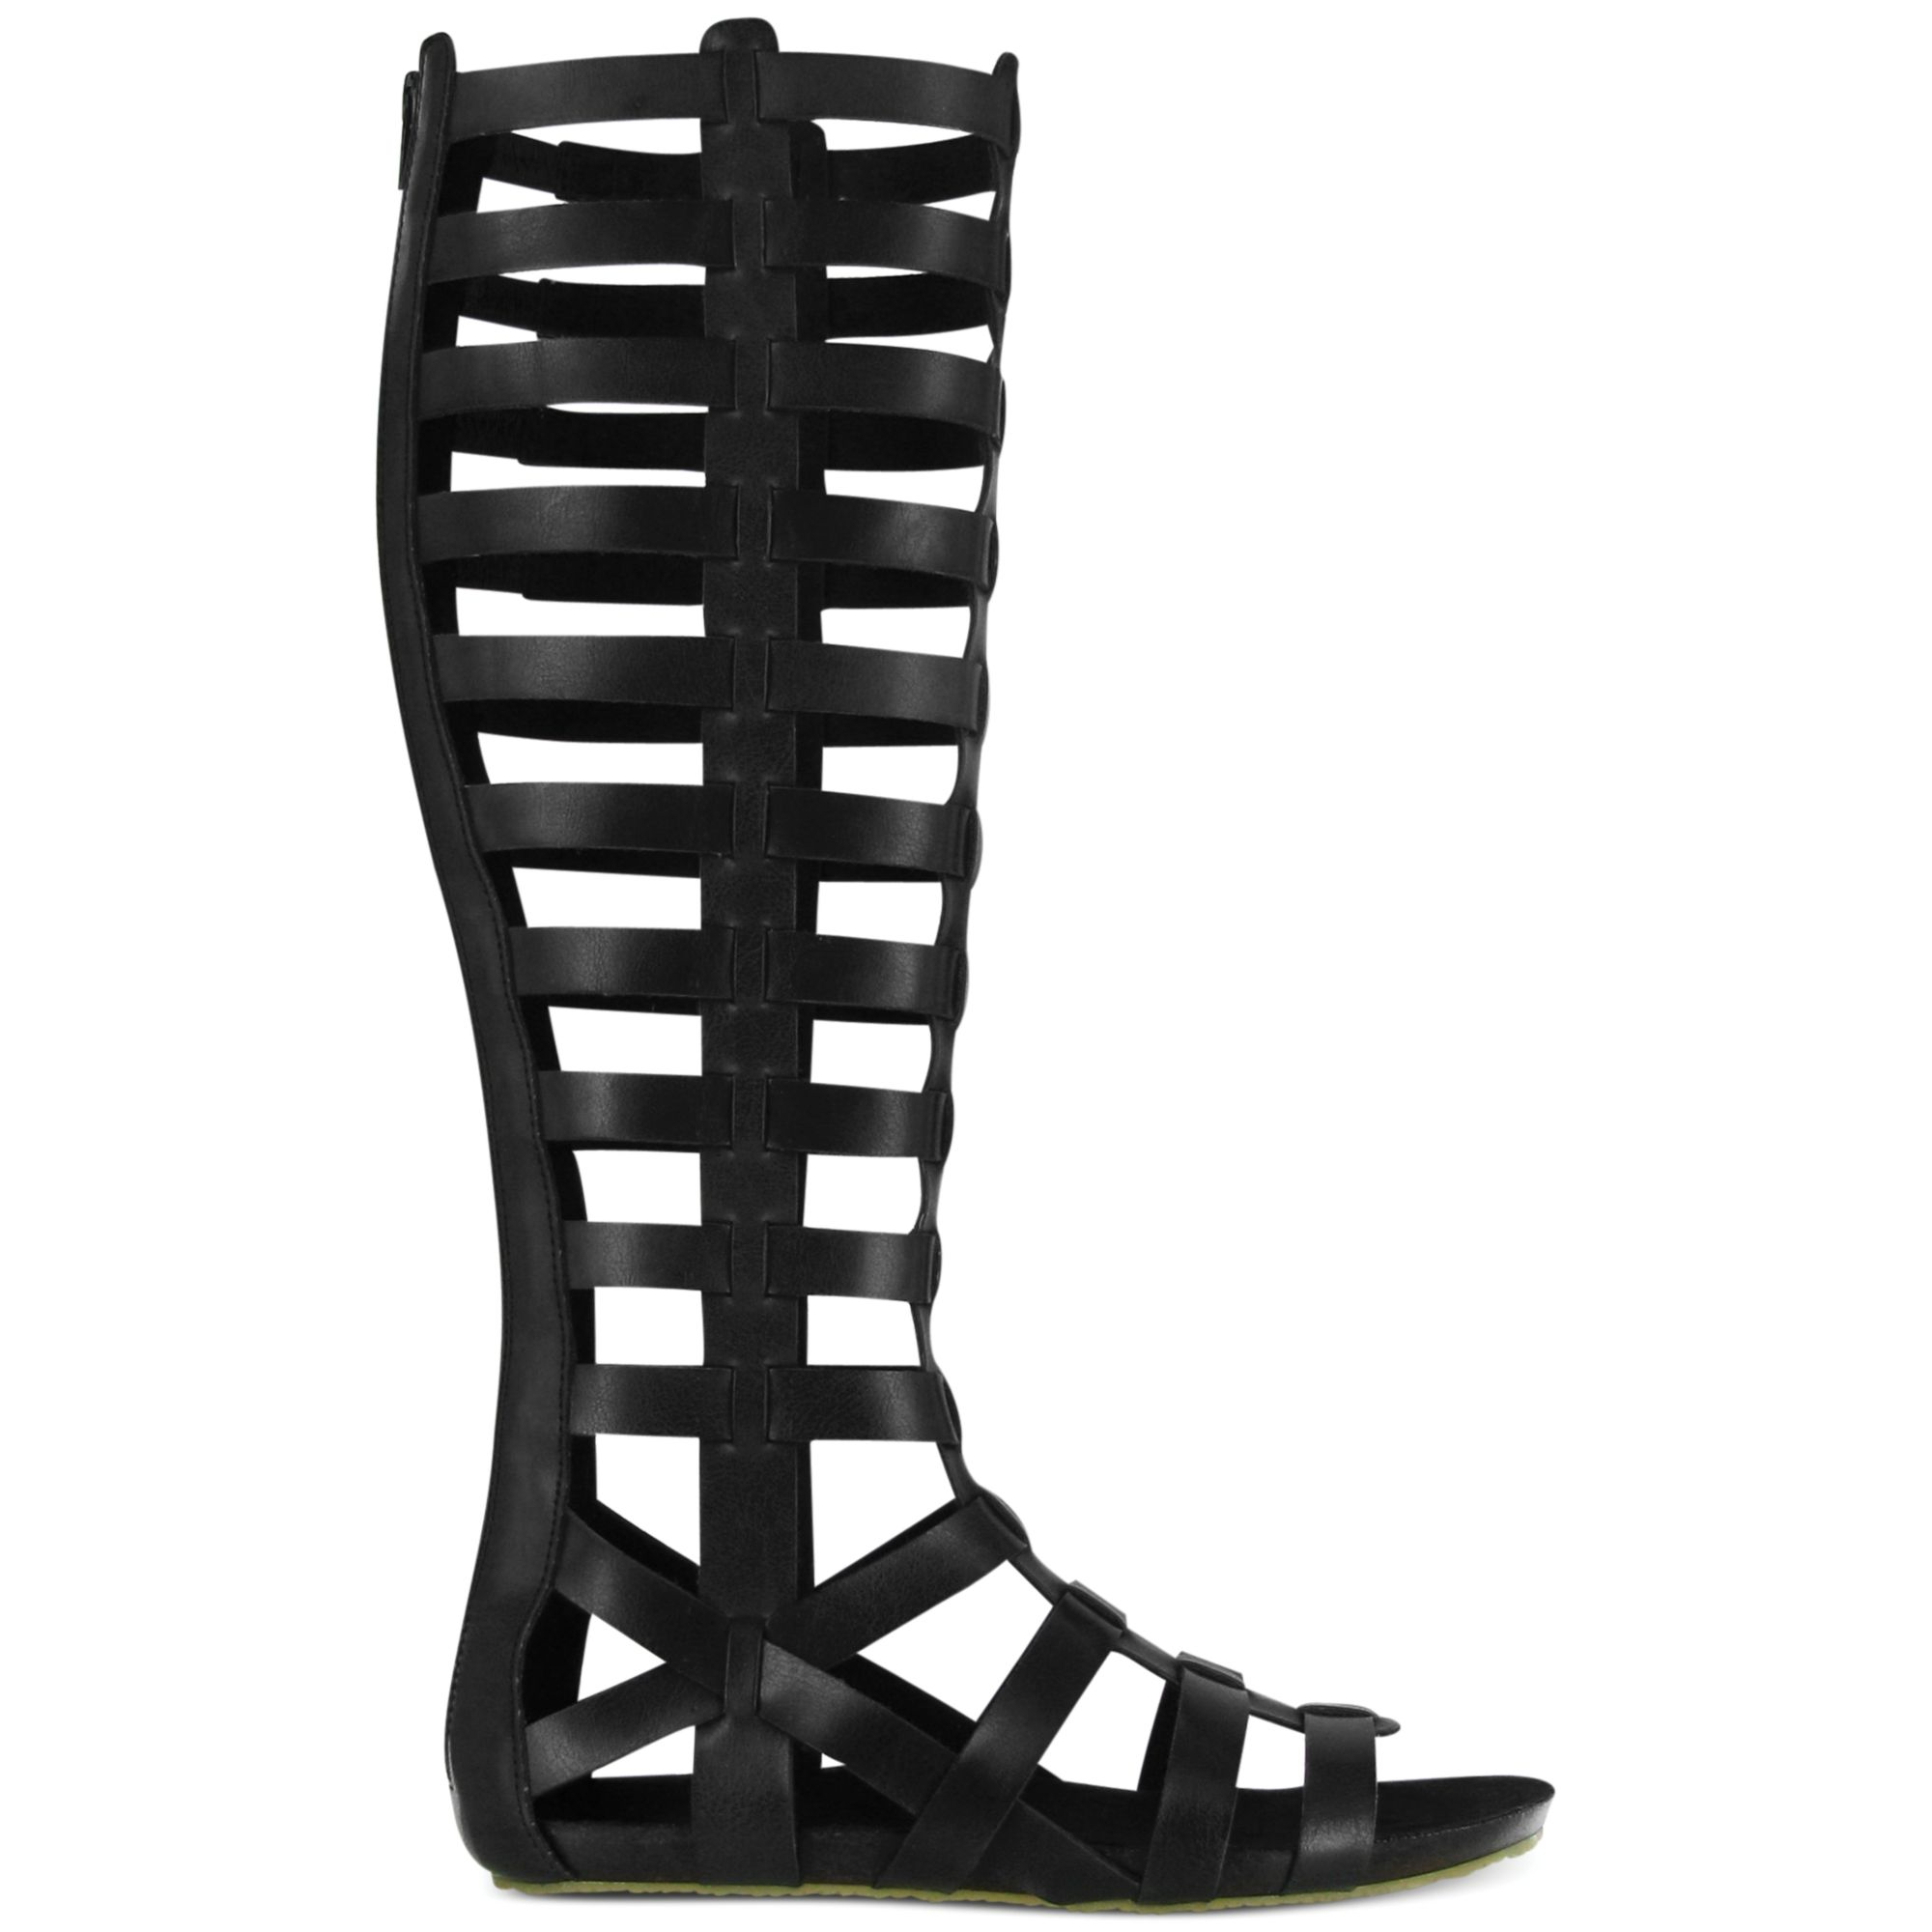 Mia Glitterati Tall Gladiator Sandals in Black | Lyst